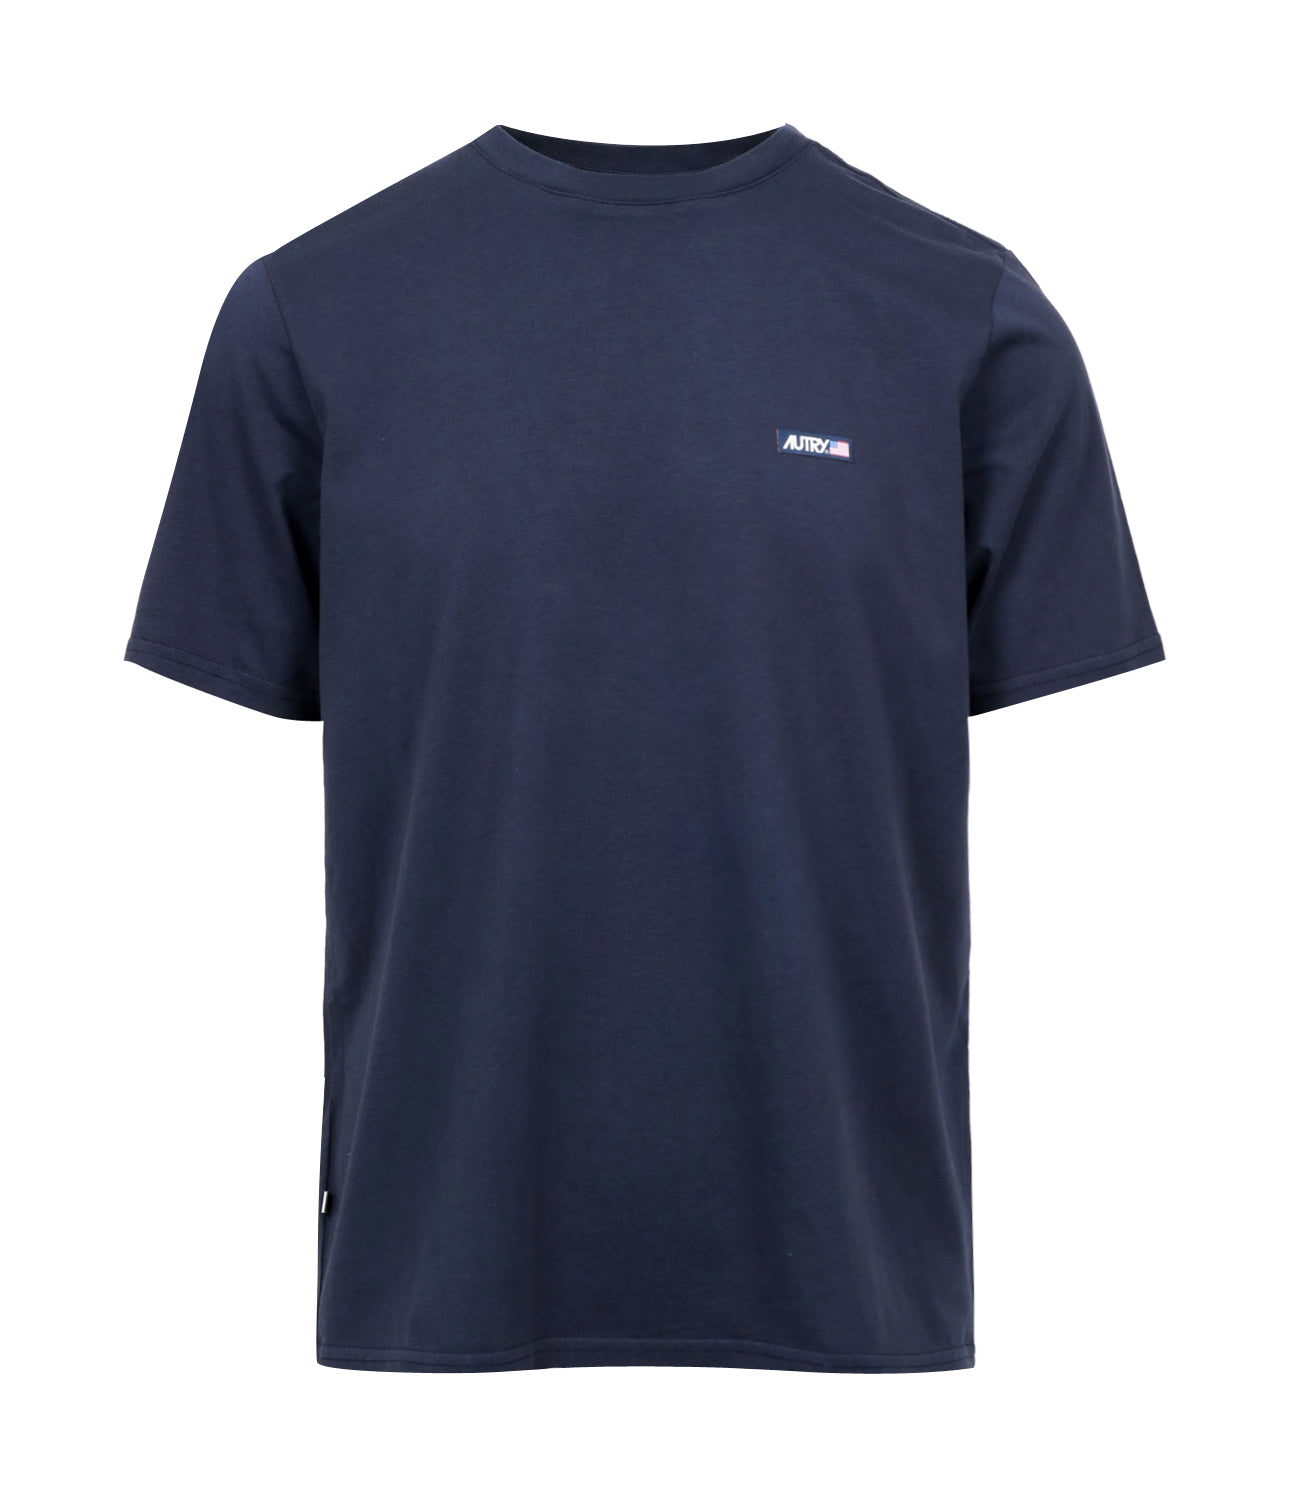 Autry | Navy Blue T-Shirt